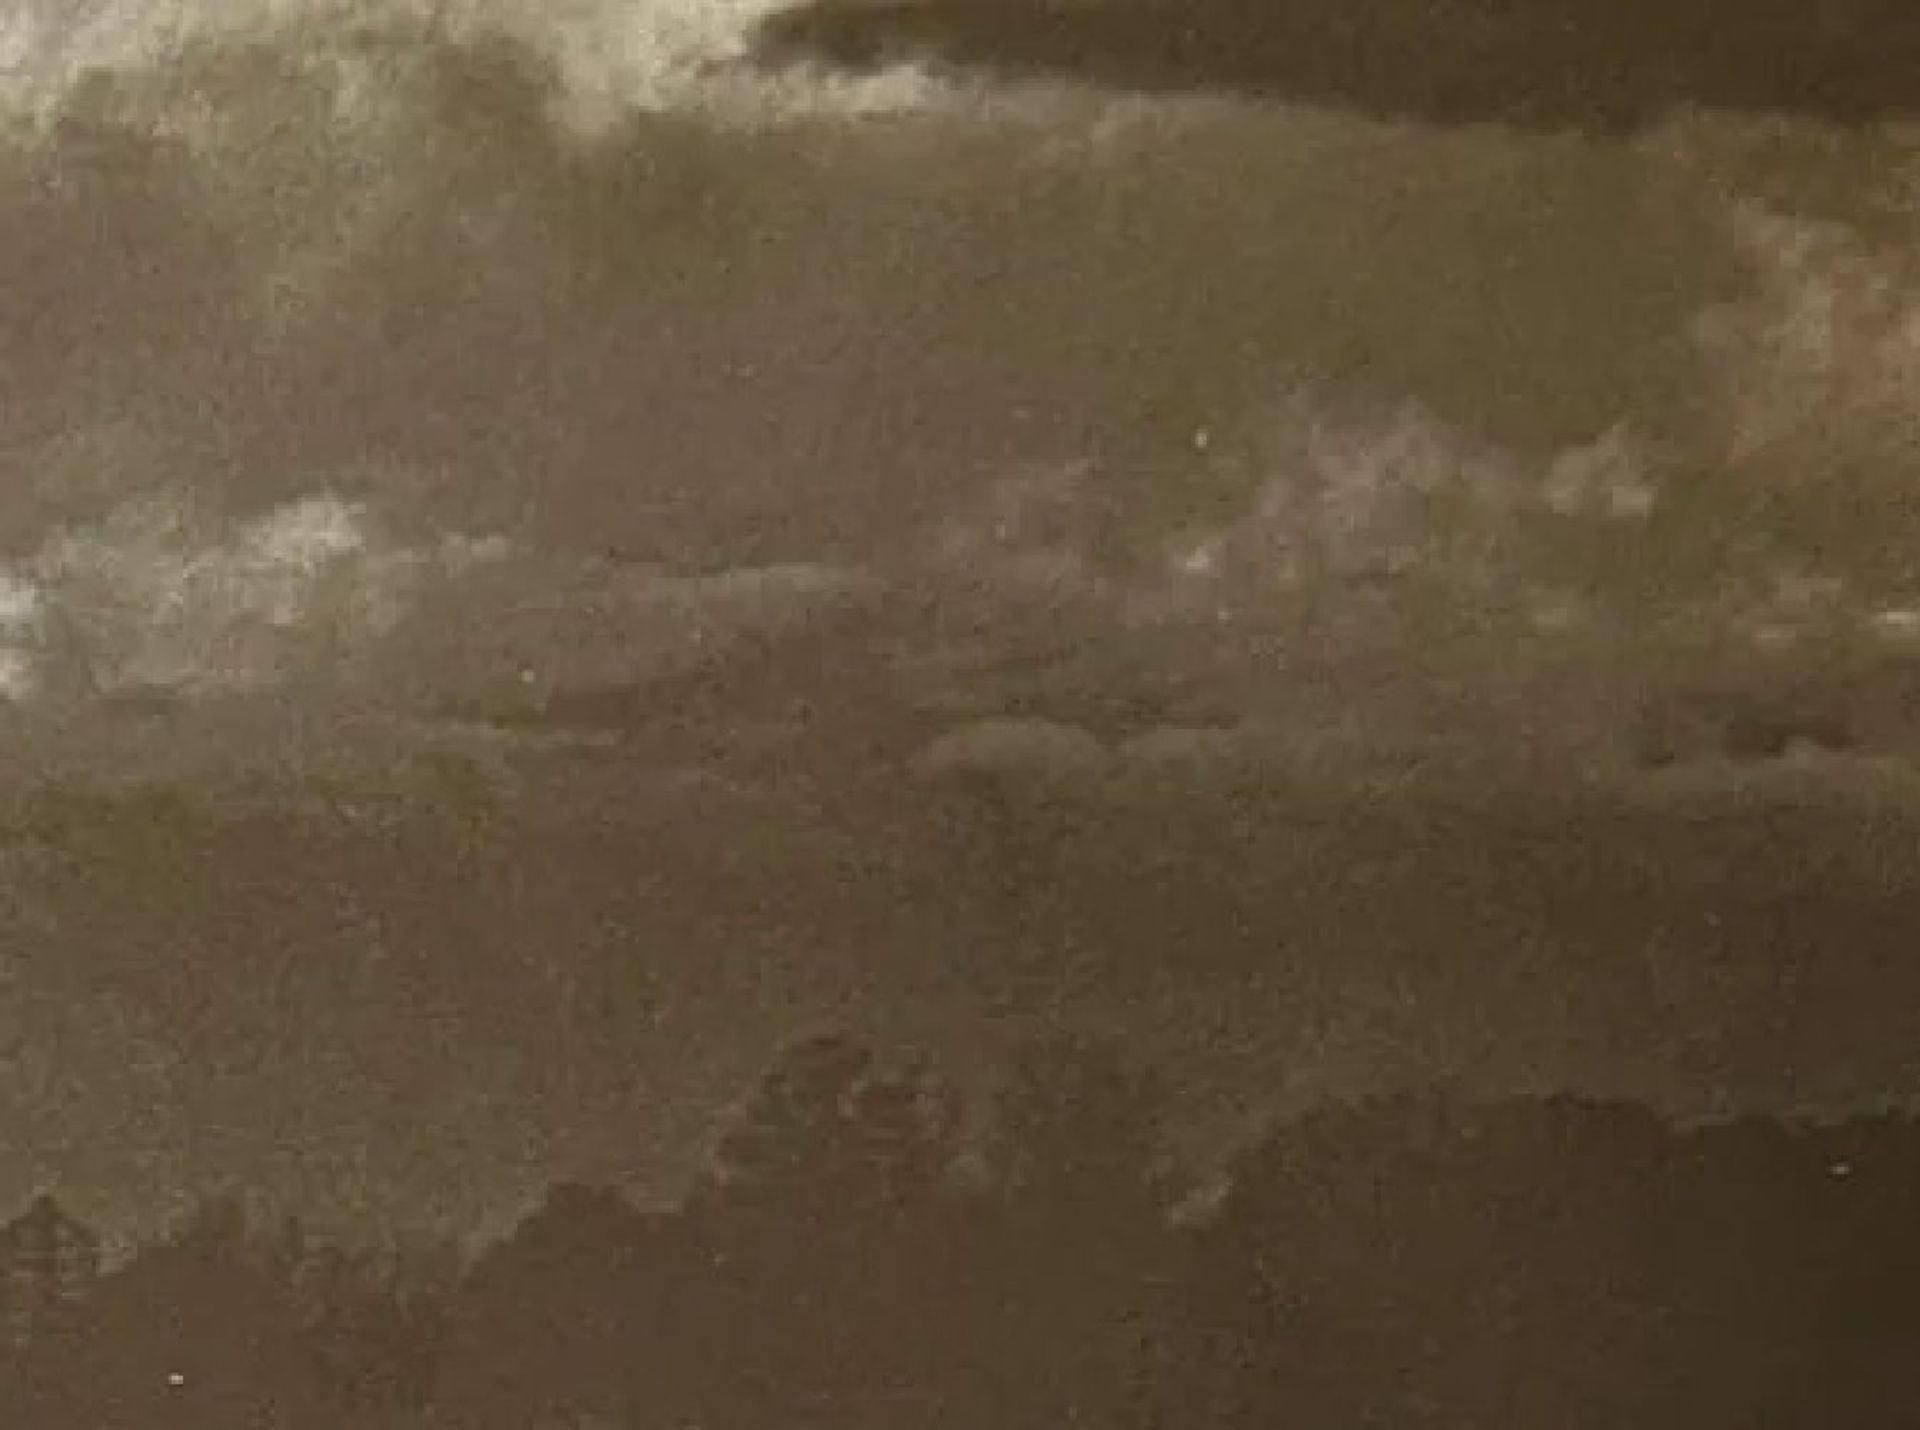 Edward Weston "Untitled" Print - Bild 5 aus 6